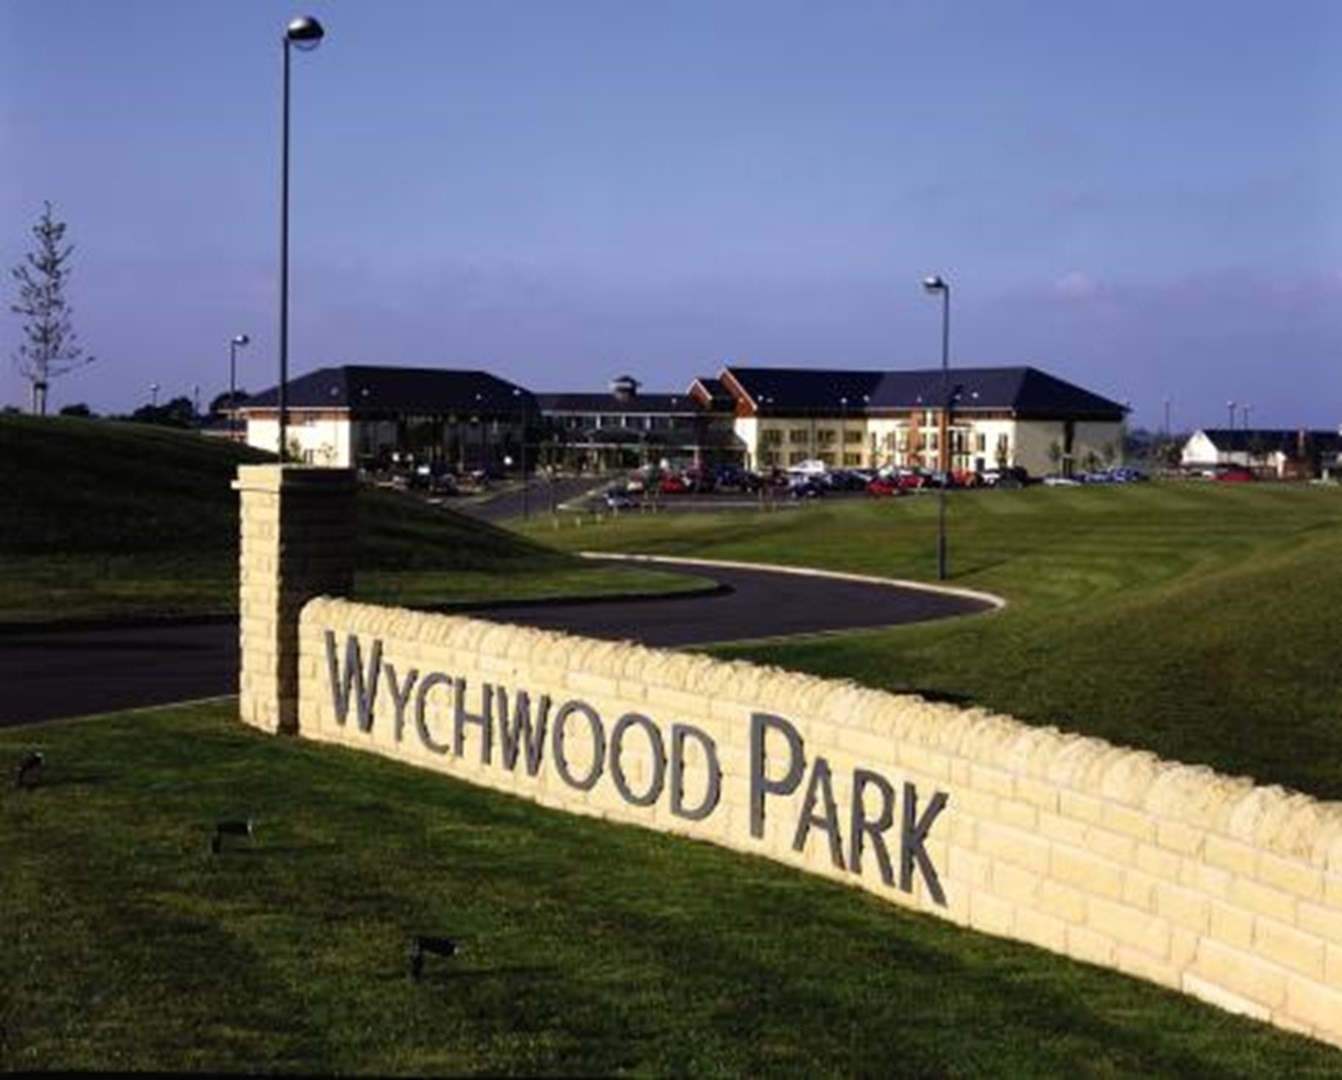 Wychwood Park